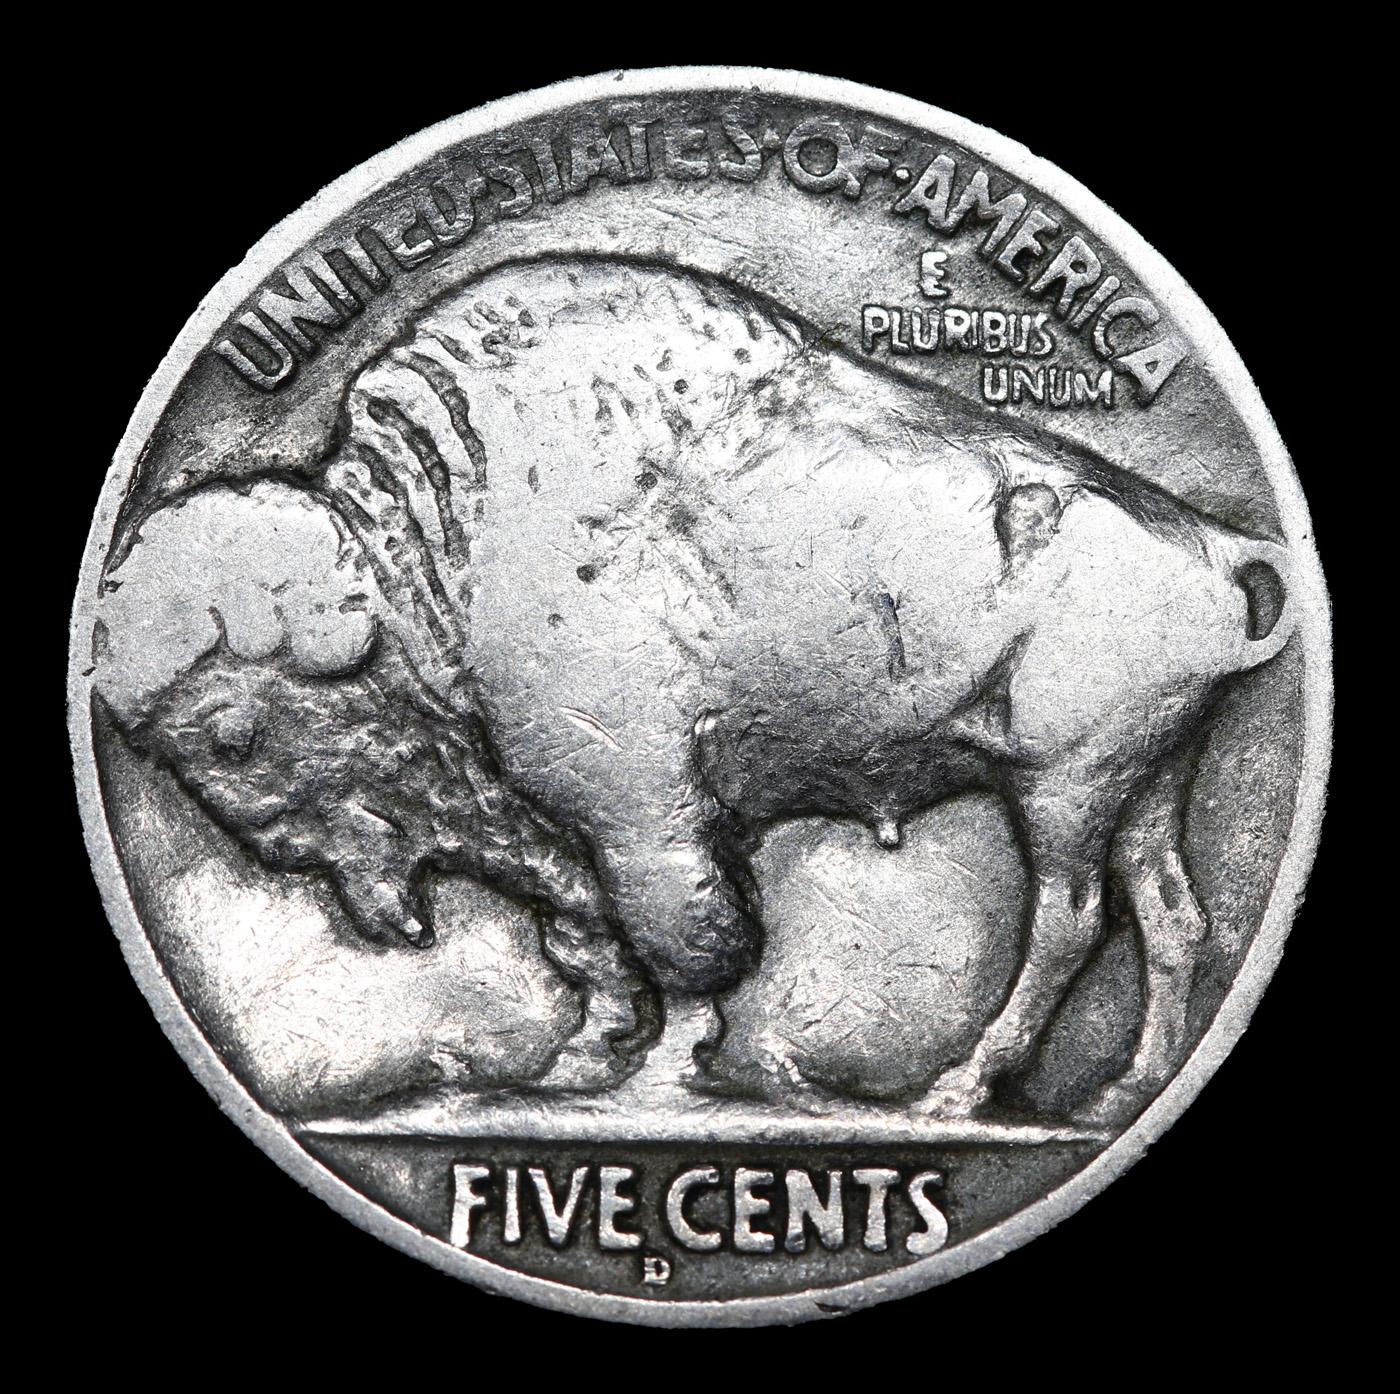 1927-d Buffalo Nickel 5c Grades vf+